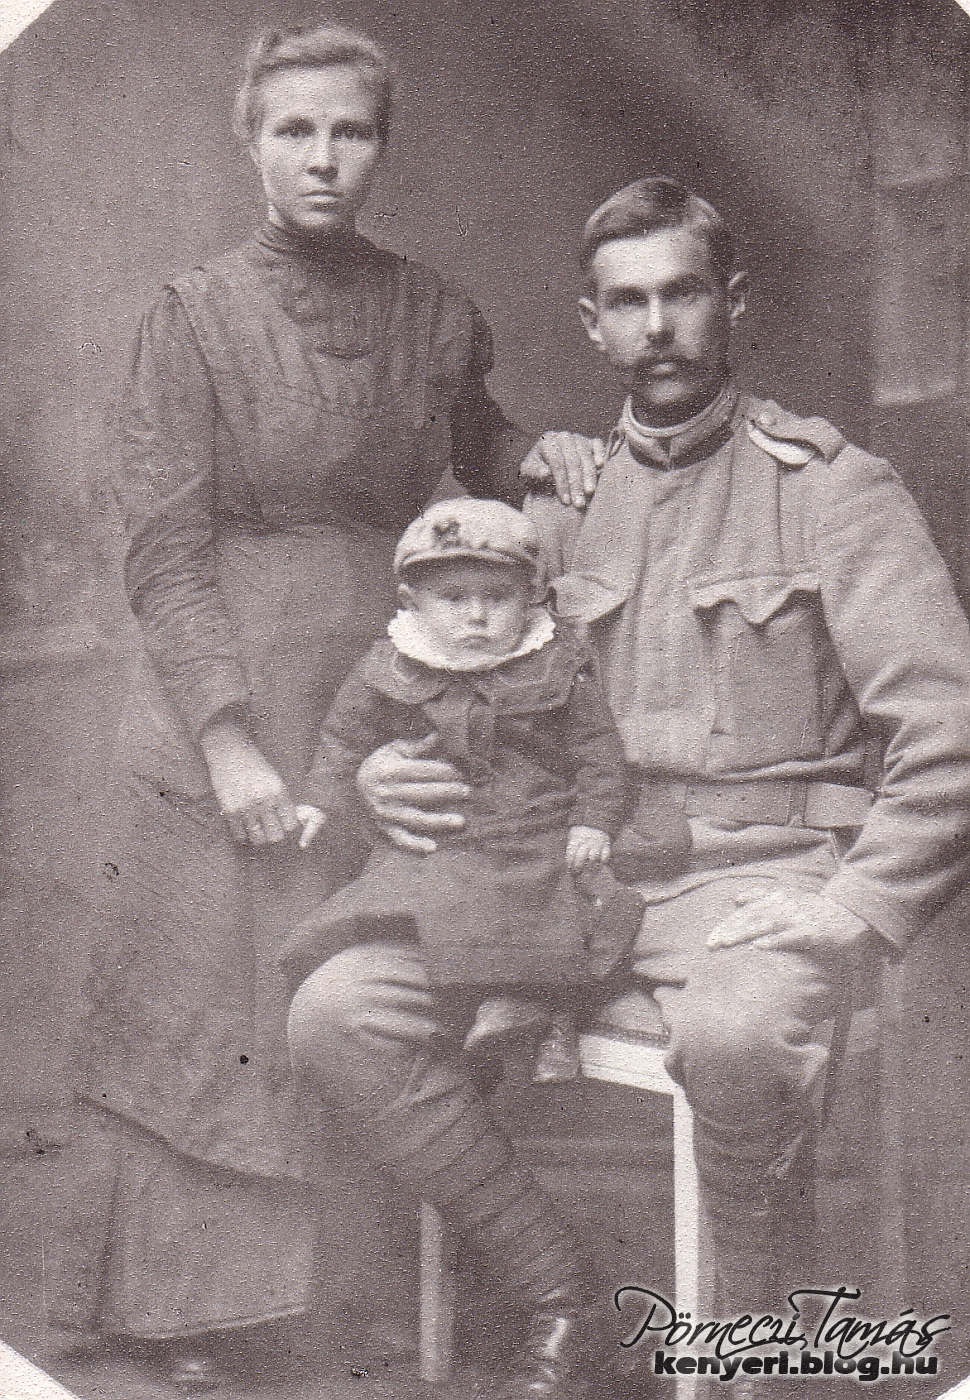 Lakatos István katonai szolgálata alatt találkozhatott családjával. Ezt a háború során úgy oldották meg, hogy a család utazott el a férj szolgálati helyéhez közeli városba. A fotón feleségével és egyéves fiúkkal, Istvánnal ültek a fényképezőgép elé, 1915-ben,  Bécsben. (Családi fotóalbumomból)